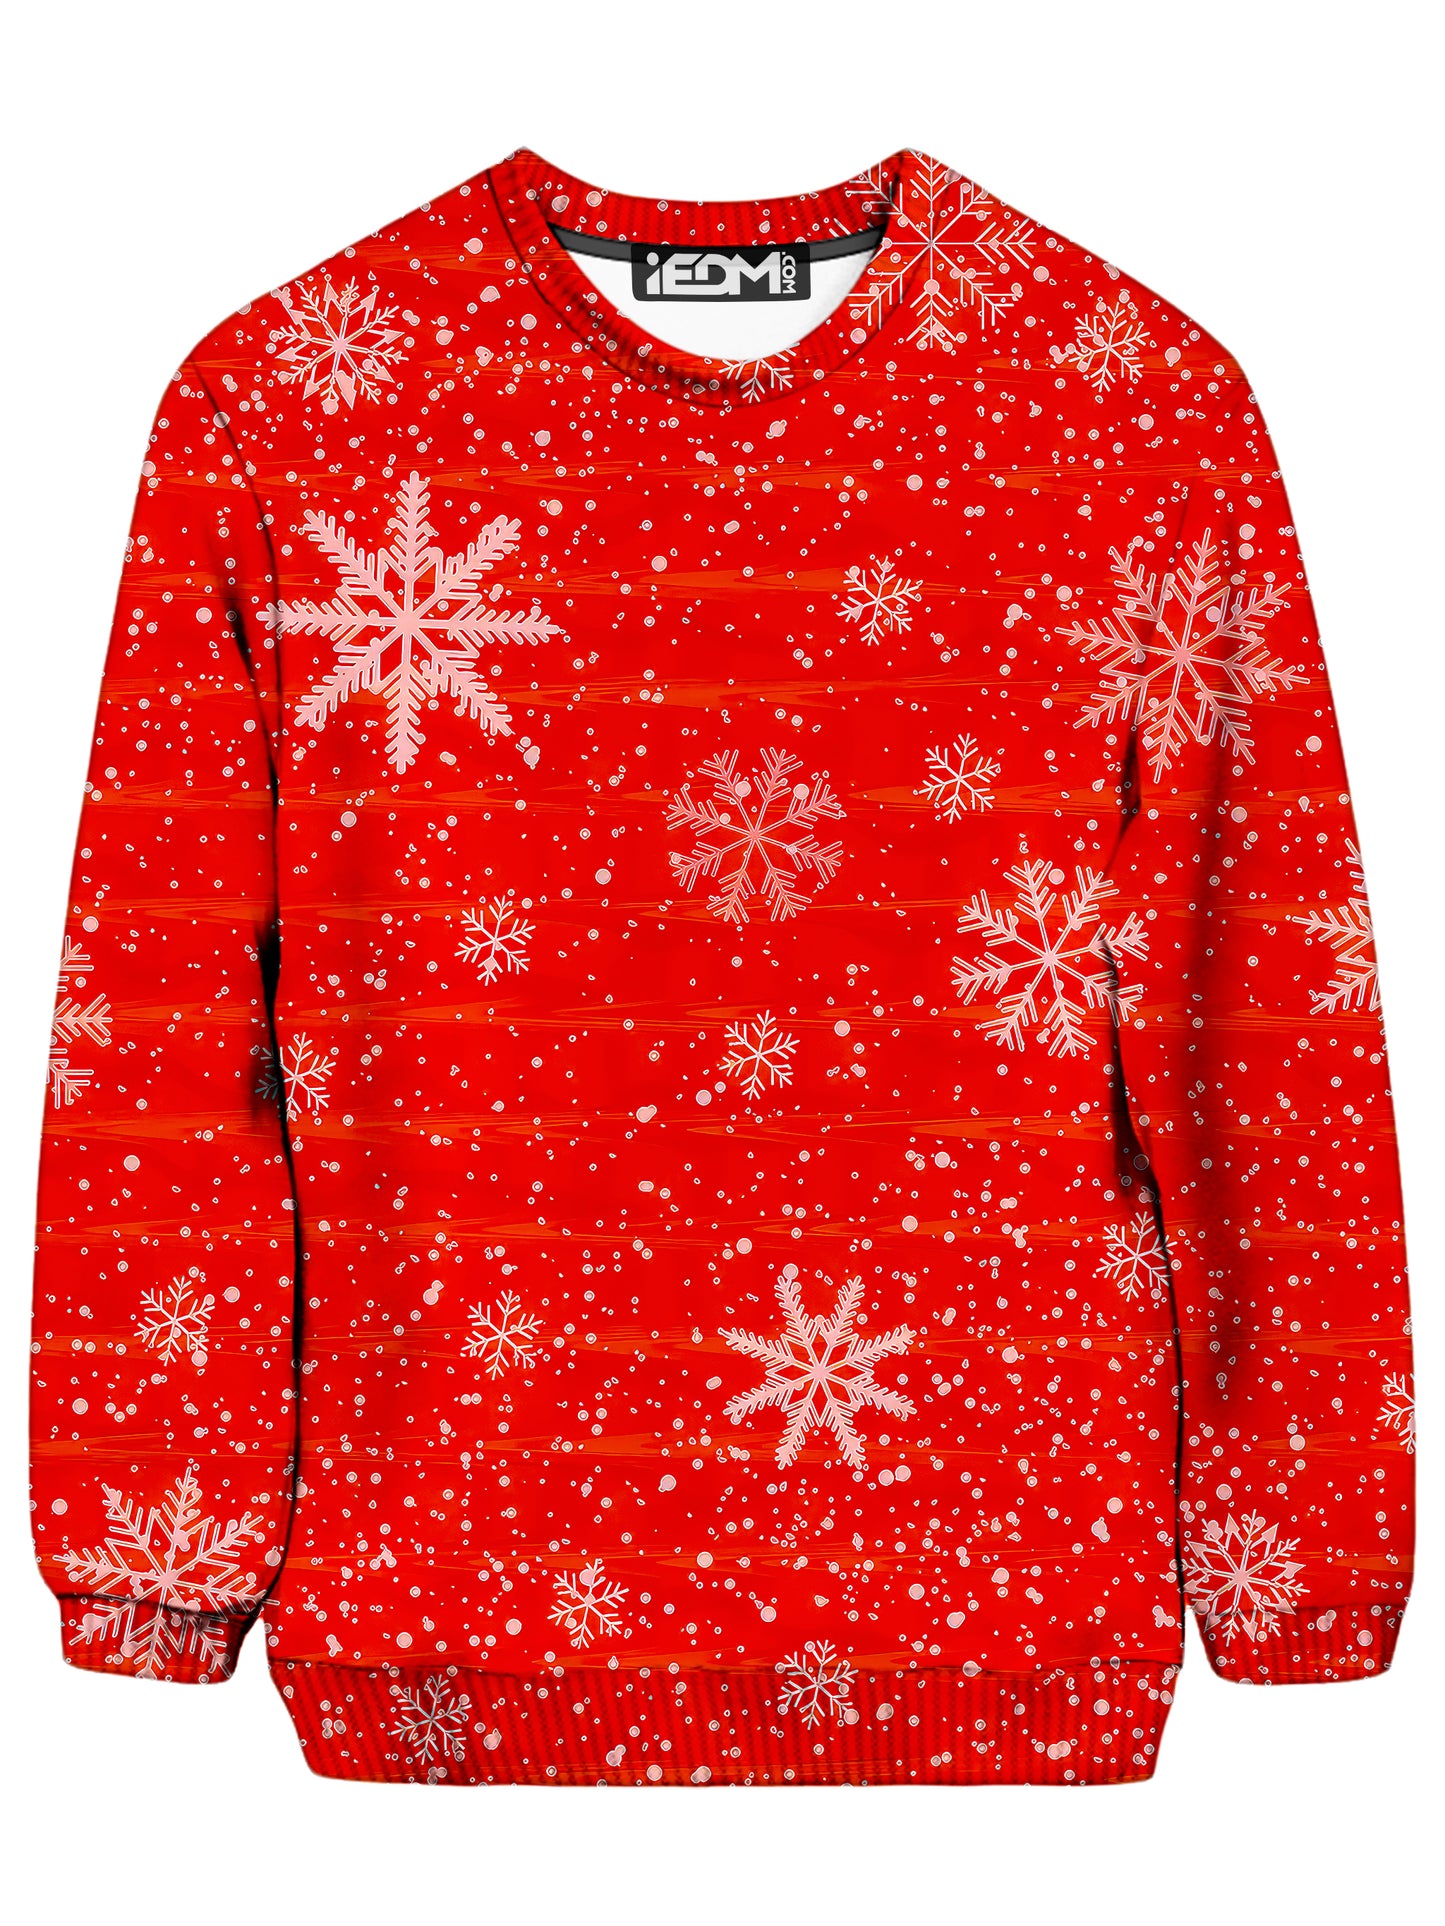 Red Holiday Sweatshirt, Big Tex Funkadelic, | iEDM